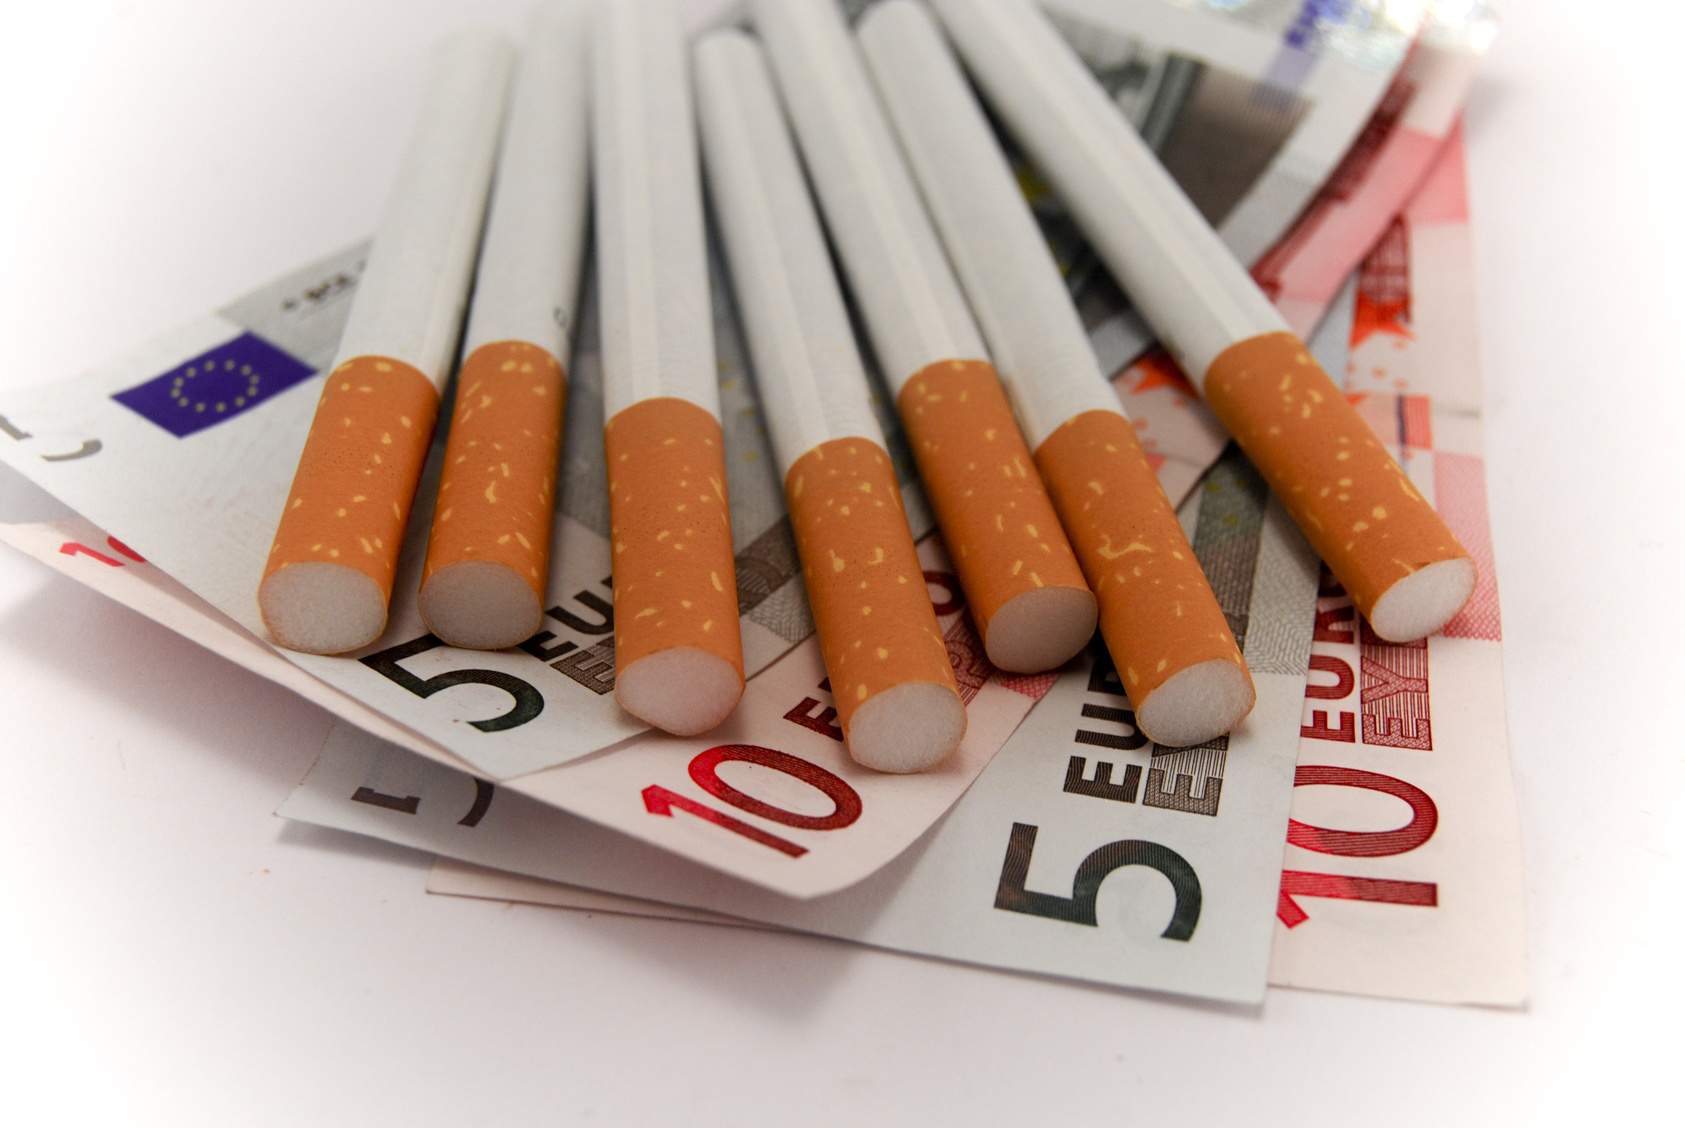 <b>Aντικαπνιστικός νόμος</b>Εστιάτορες εναντίον υπουργείου Υγείας για το κάπνισμα